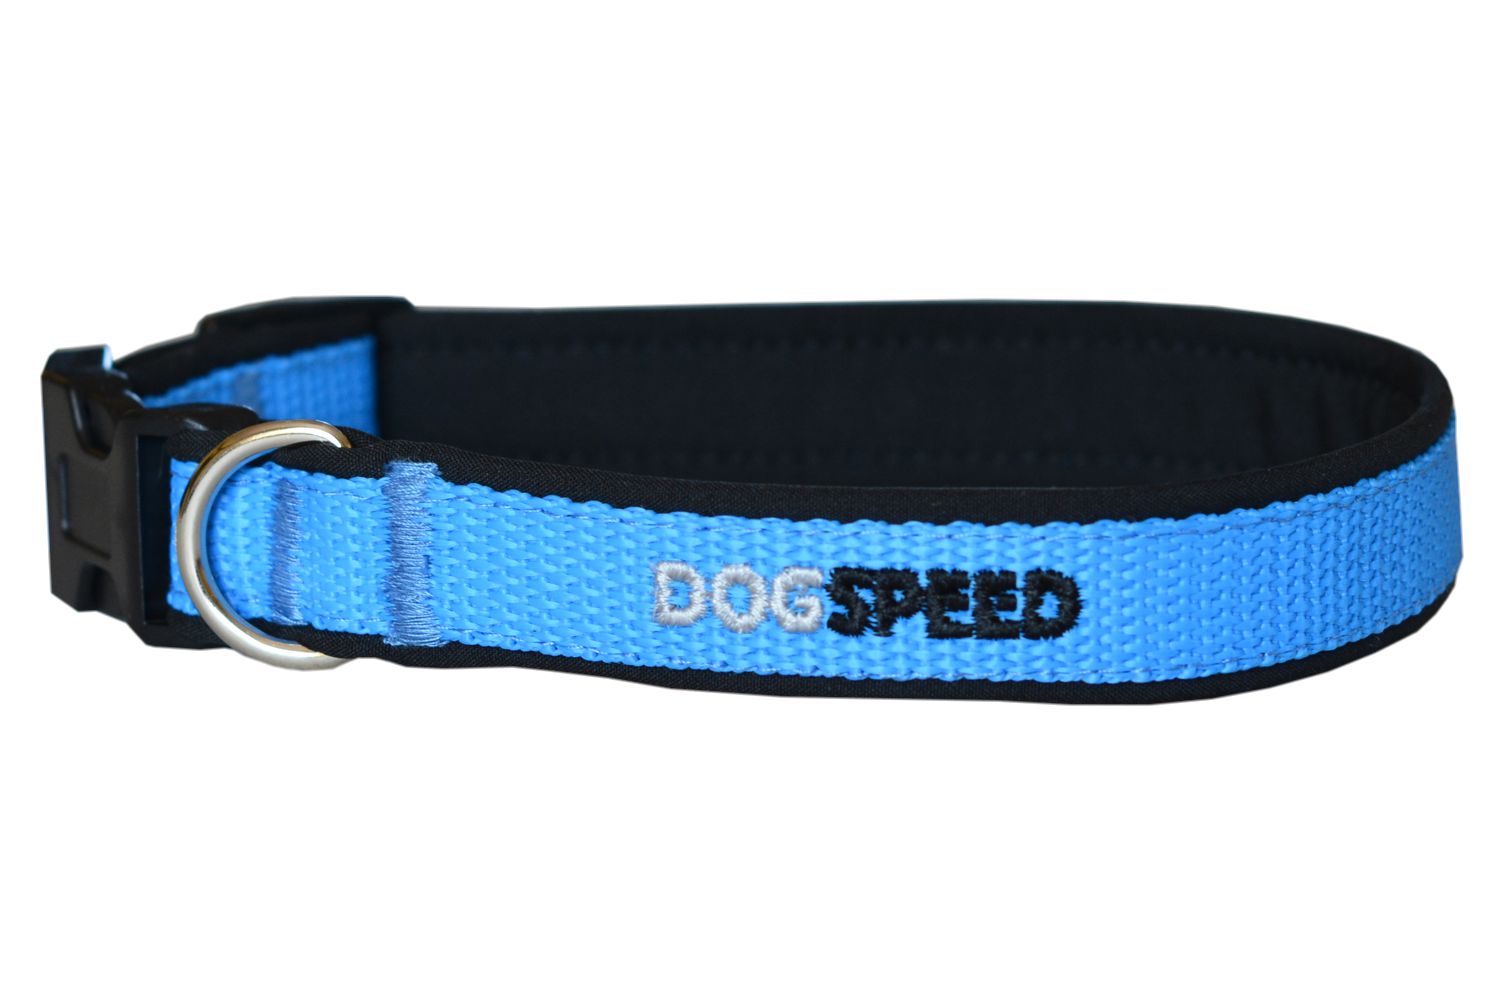 Obroża dla psa podszyta softshellem, czarno-niebieska, możliwa personalizacja np. imię psa, szer. 2cm